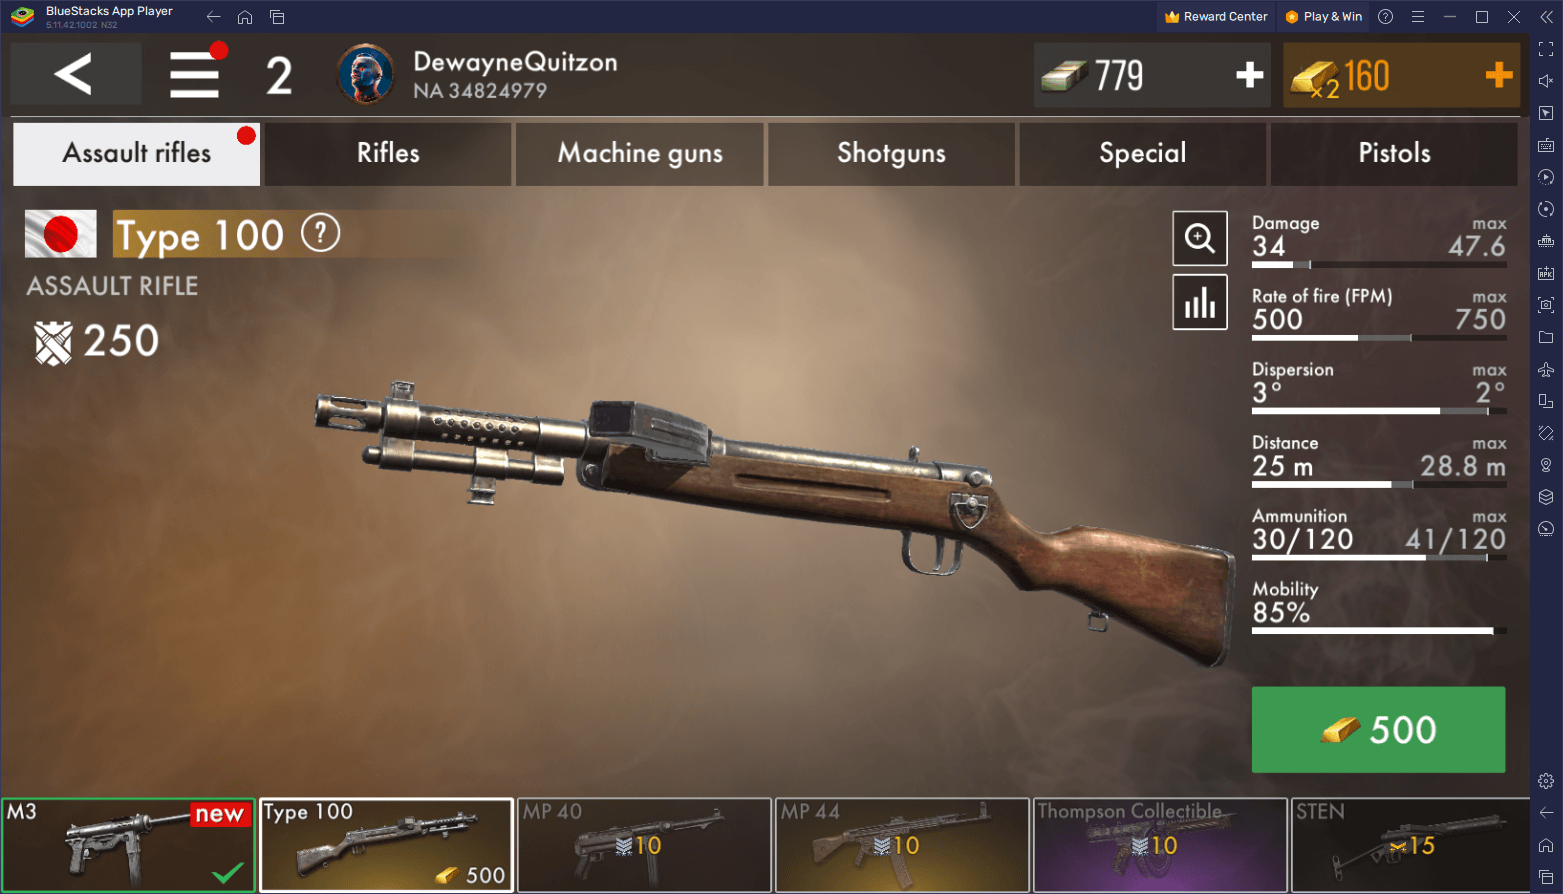 World War Battleground FPS Sniper Shooter - Microsoft Apps